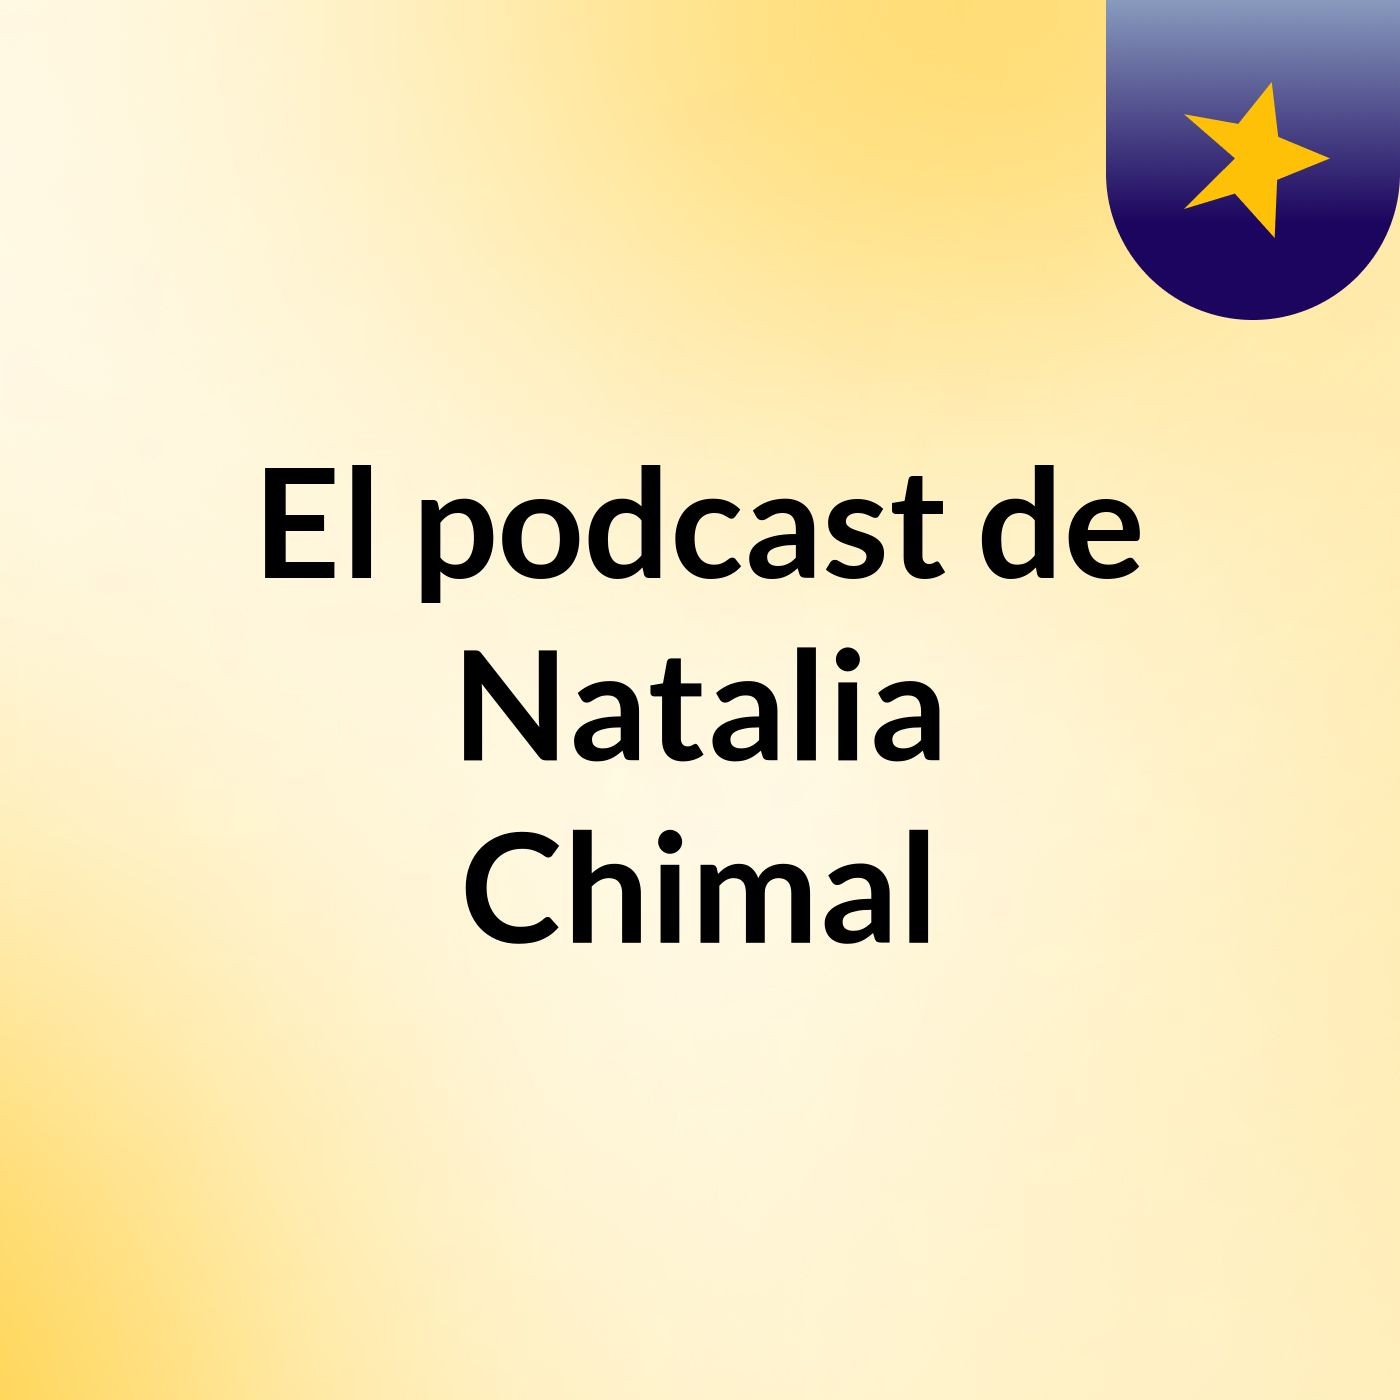 El podcast de Natalia Chimal